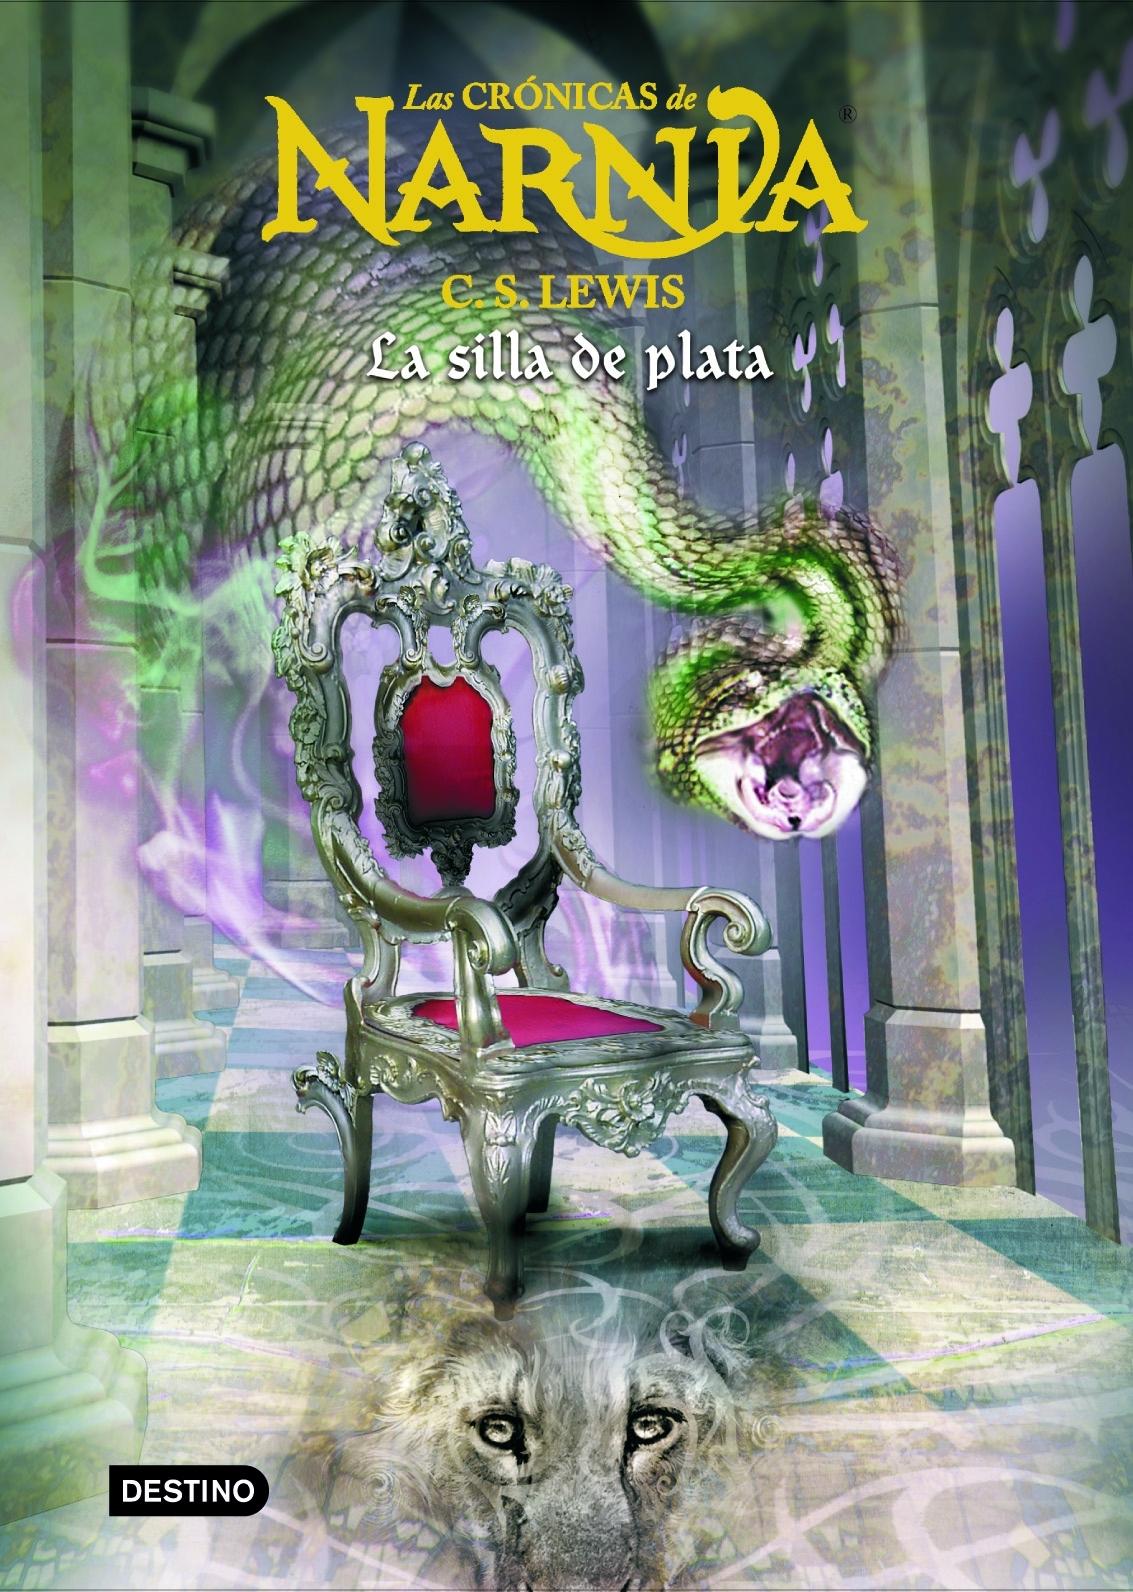 Las Crónicas de Narnia 6 "La silla de plata"